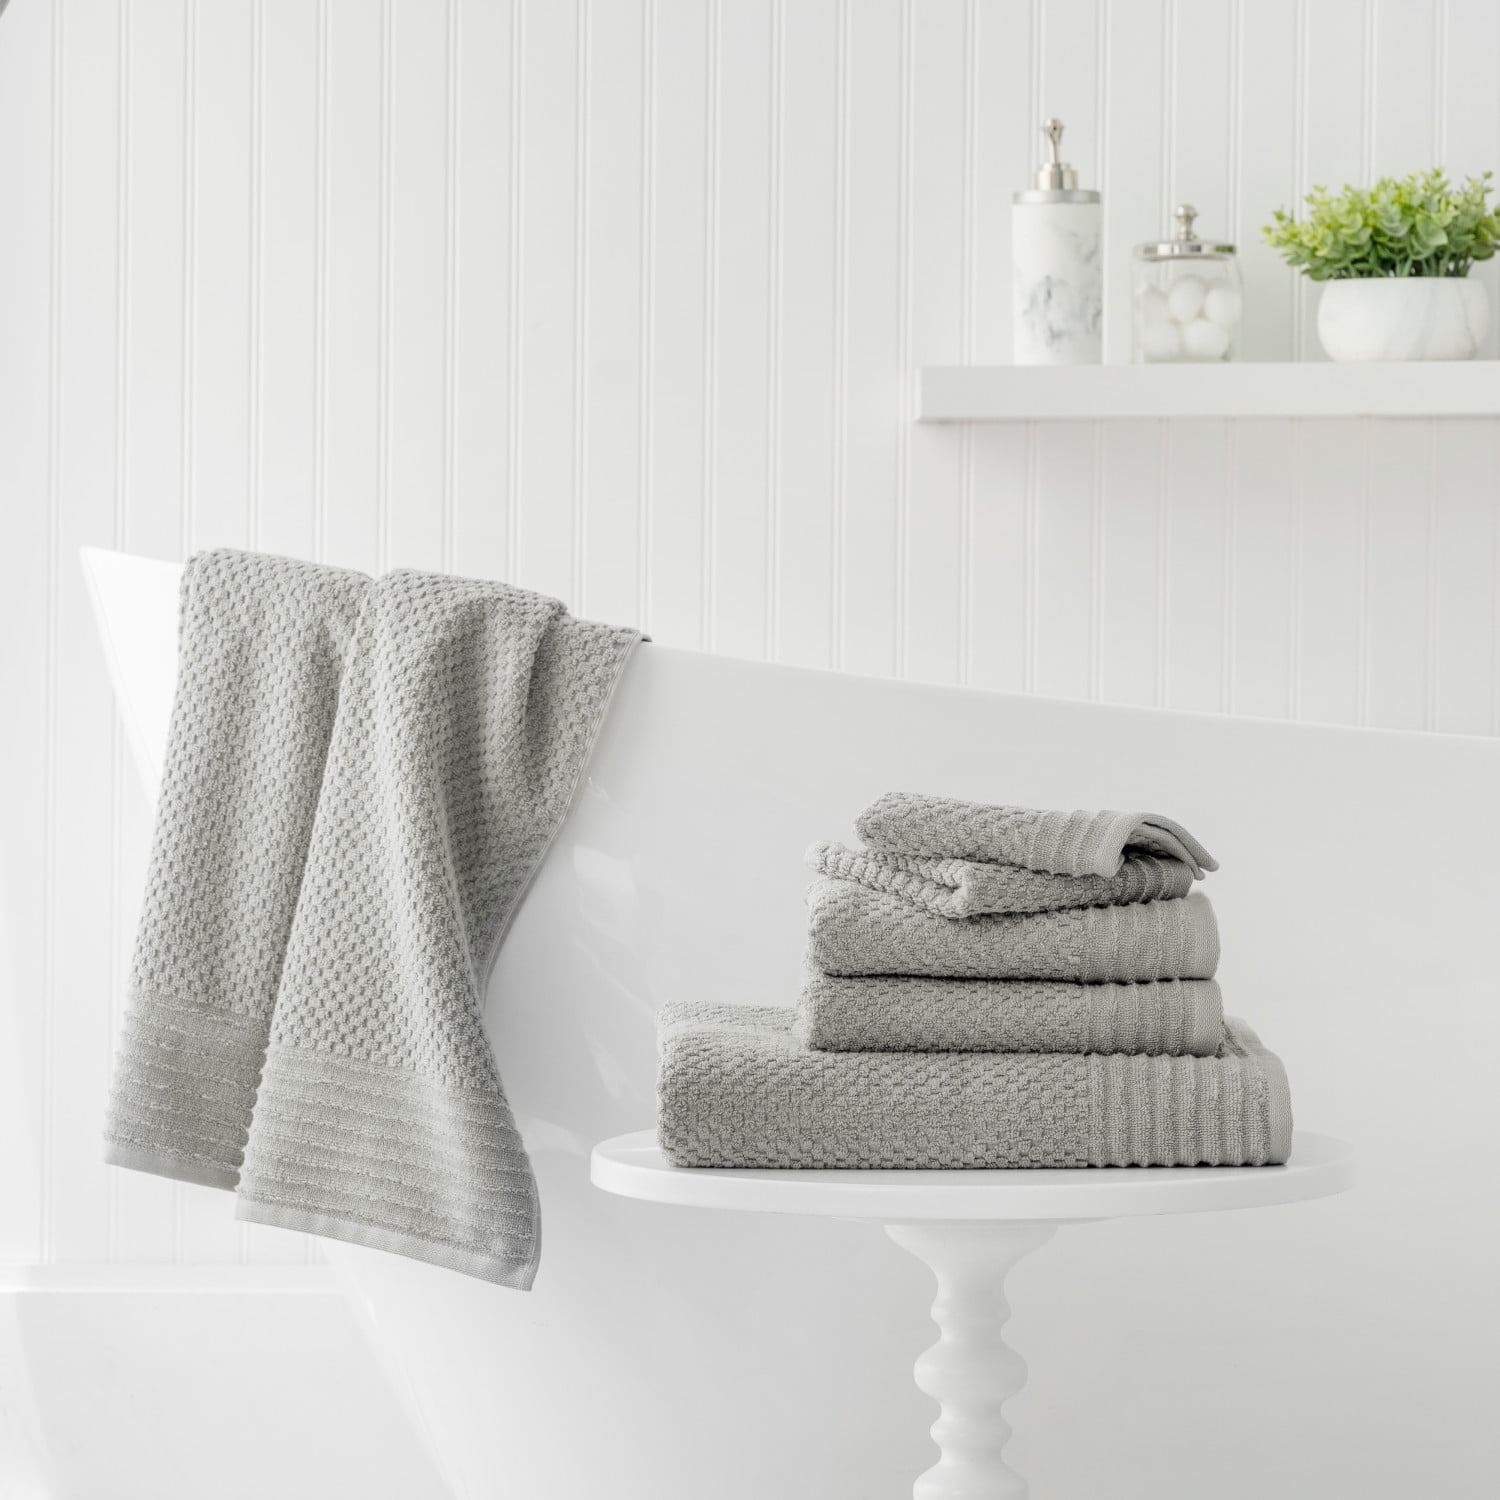 costcofindsca - This 6-pack @marthastewart kitchen towels